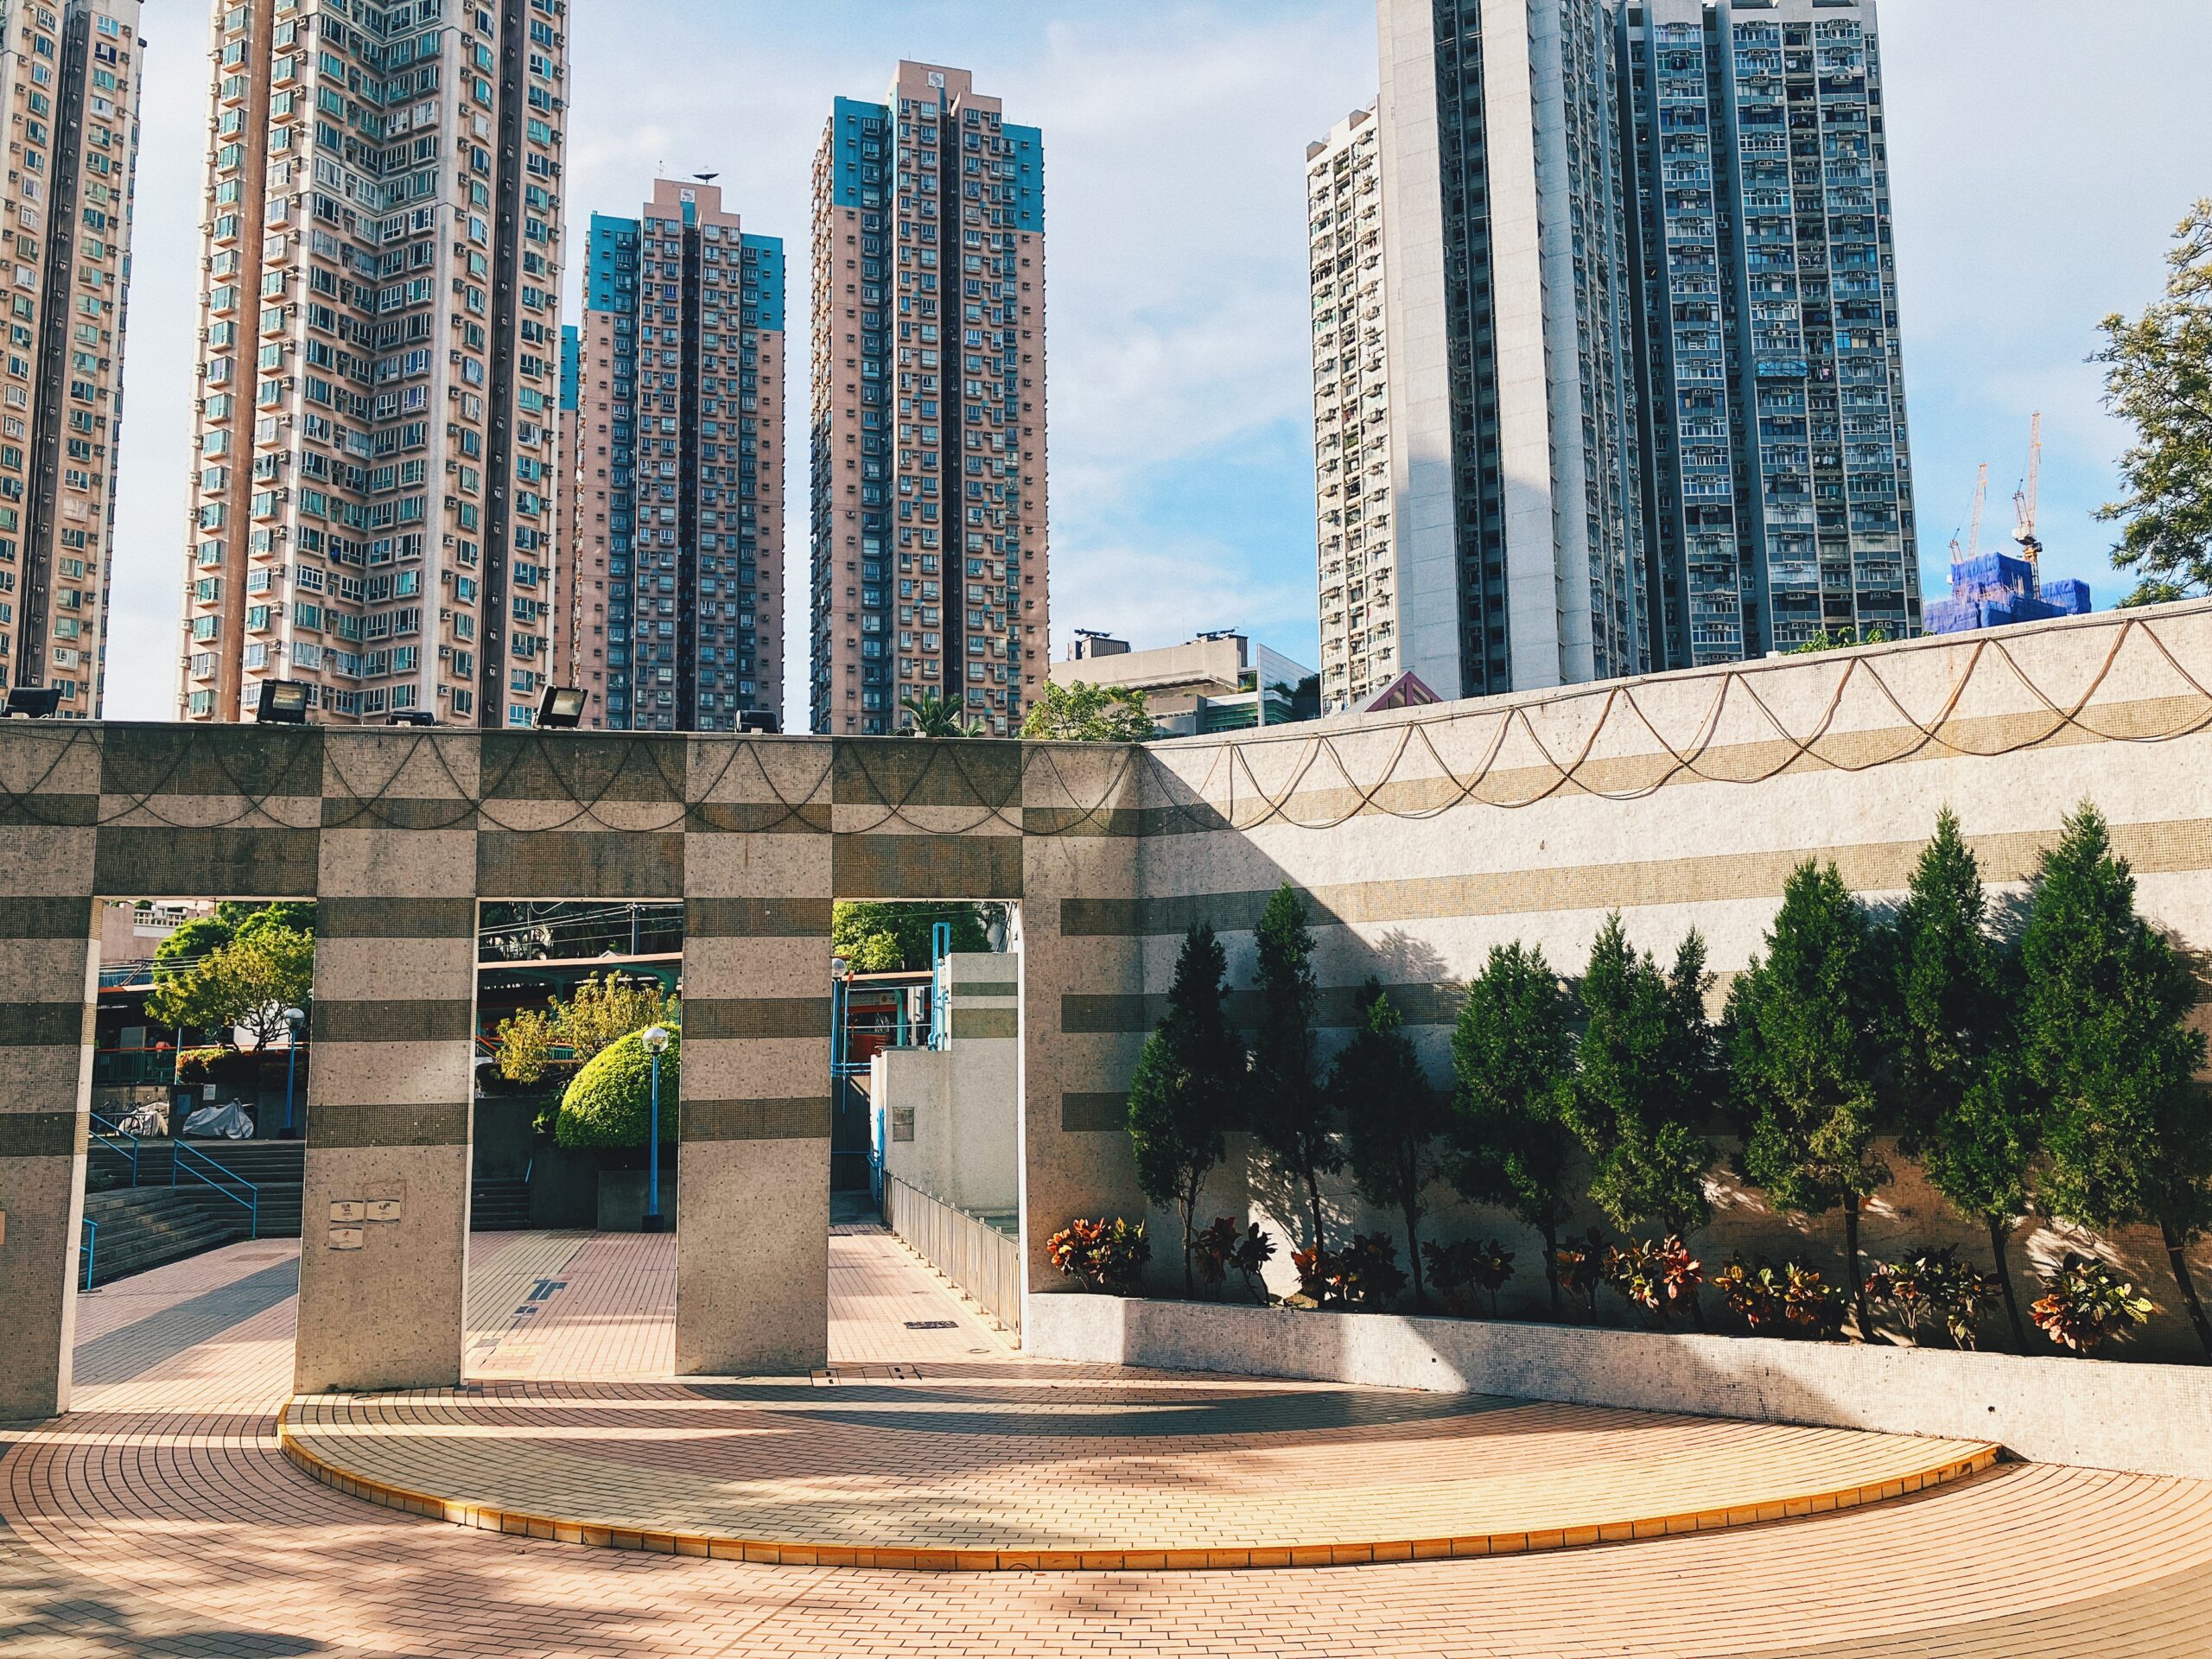 【香港公屋】屯門建生邨 公共空間運用設計藏驚喜